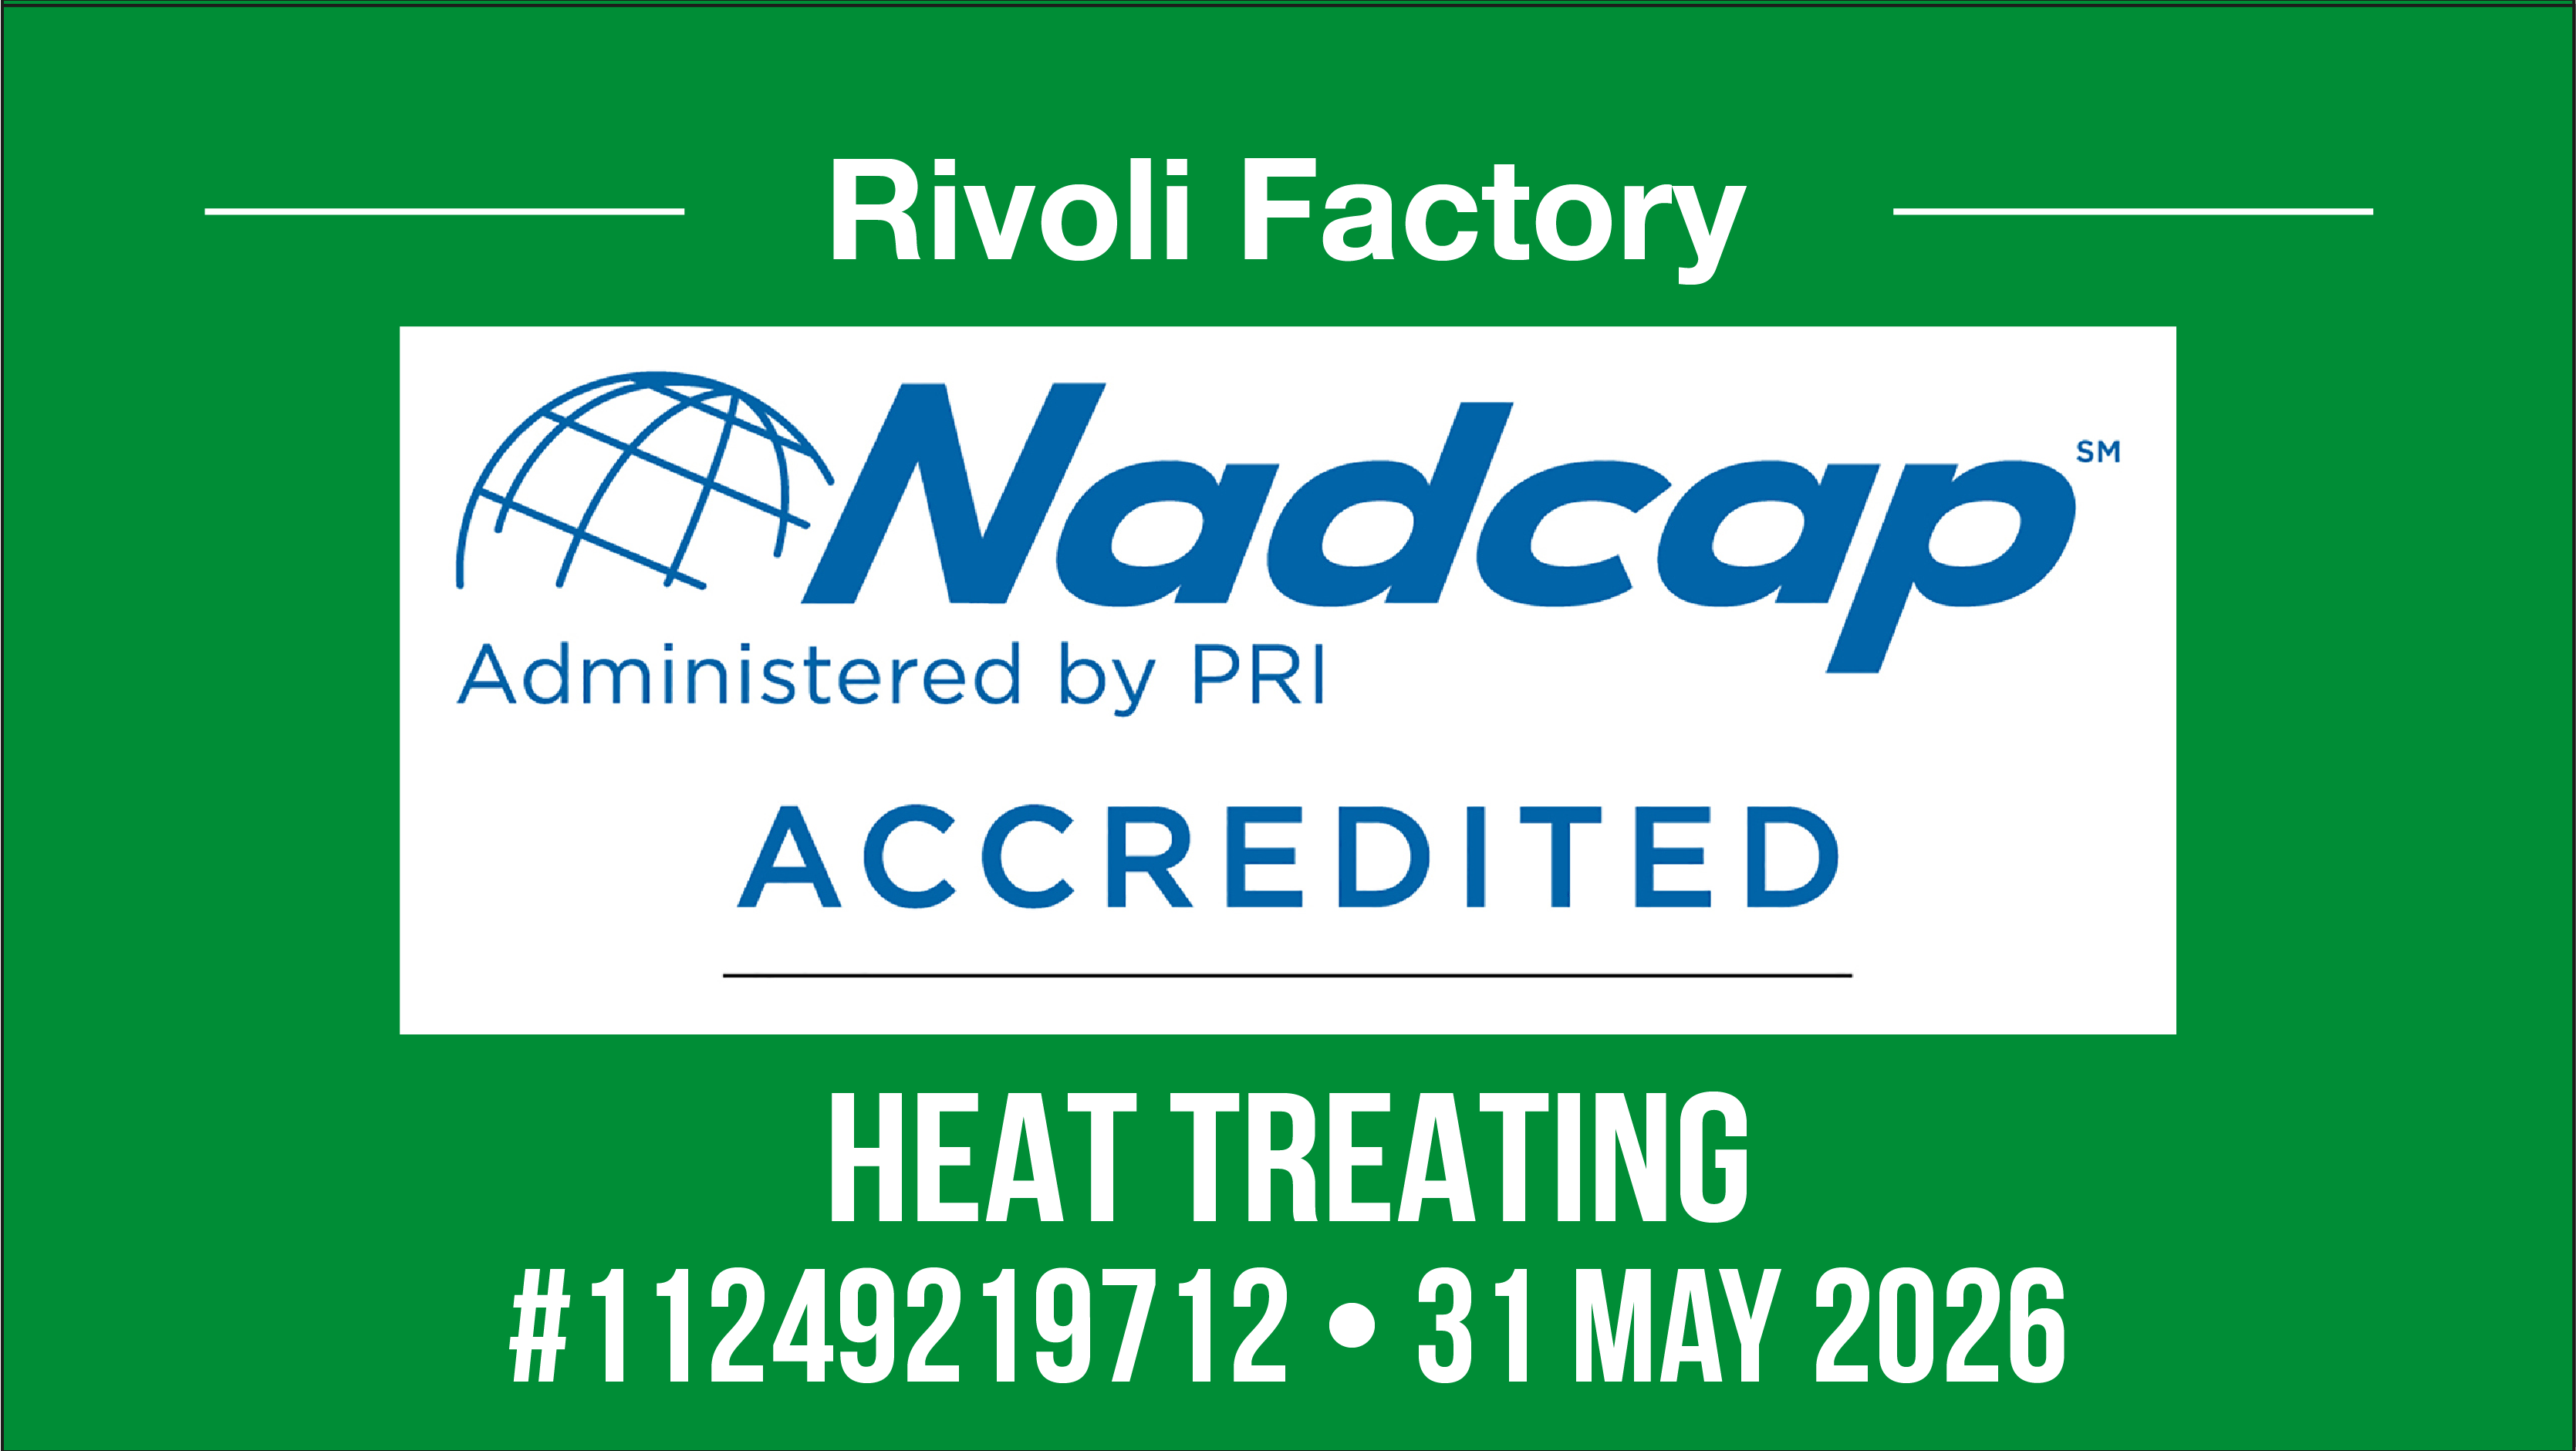 NADCAP-Rivoli-11249219712